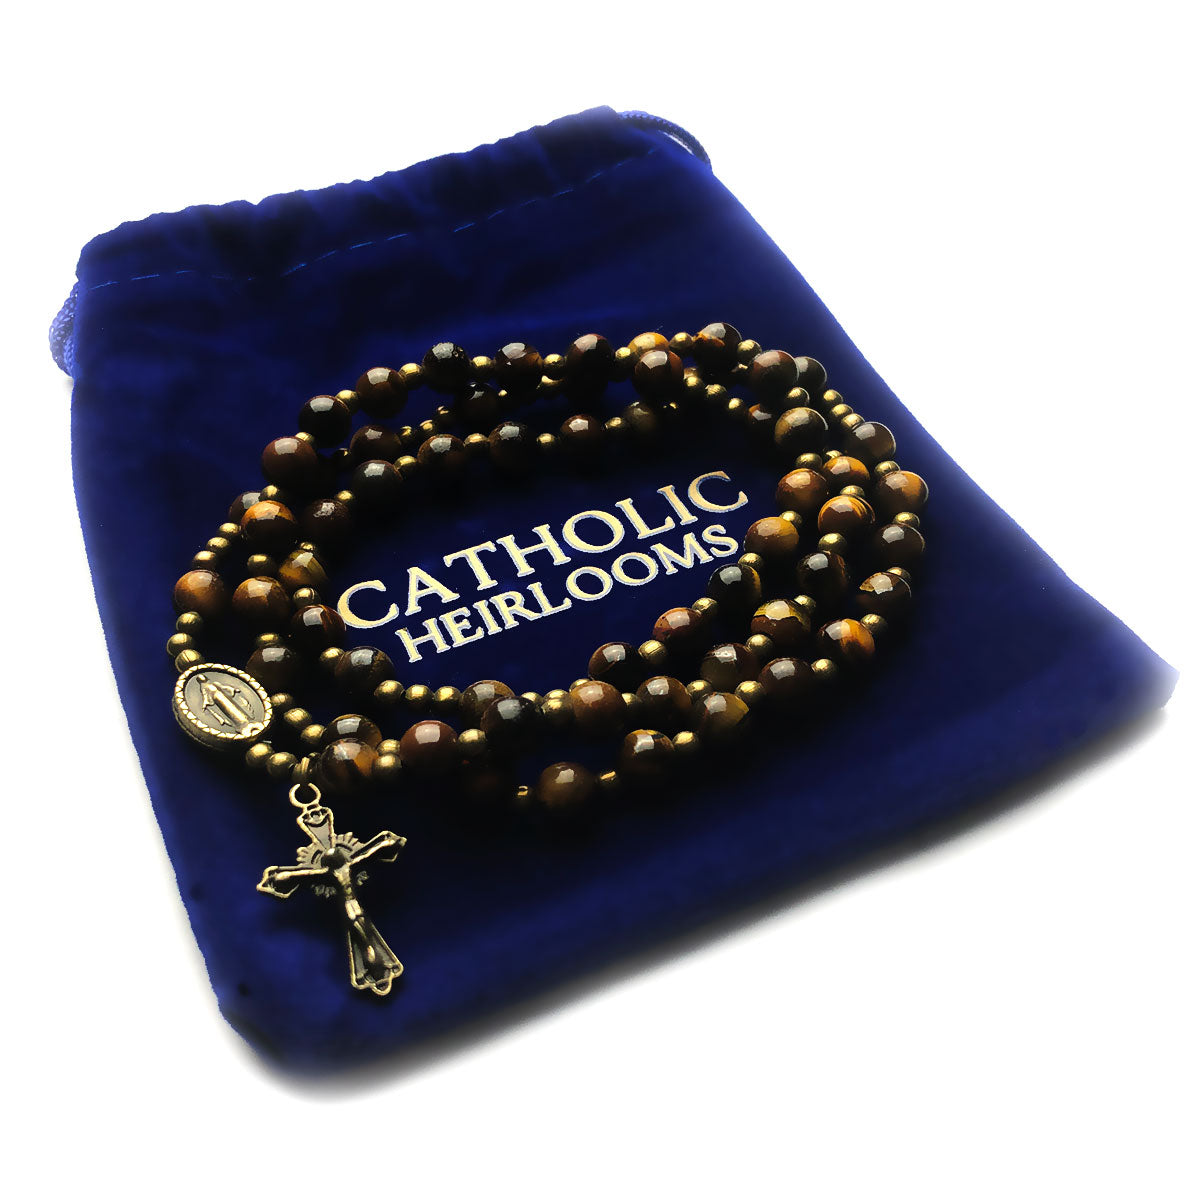 Tiger Eye Stone Full 5-Decade Catholic Rosary Bracelet by Catholic Heirlooms - Confirmation - Holy Communion Gift